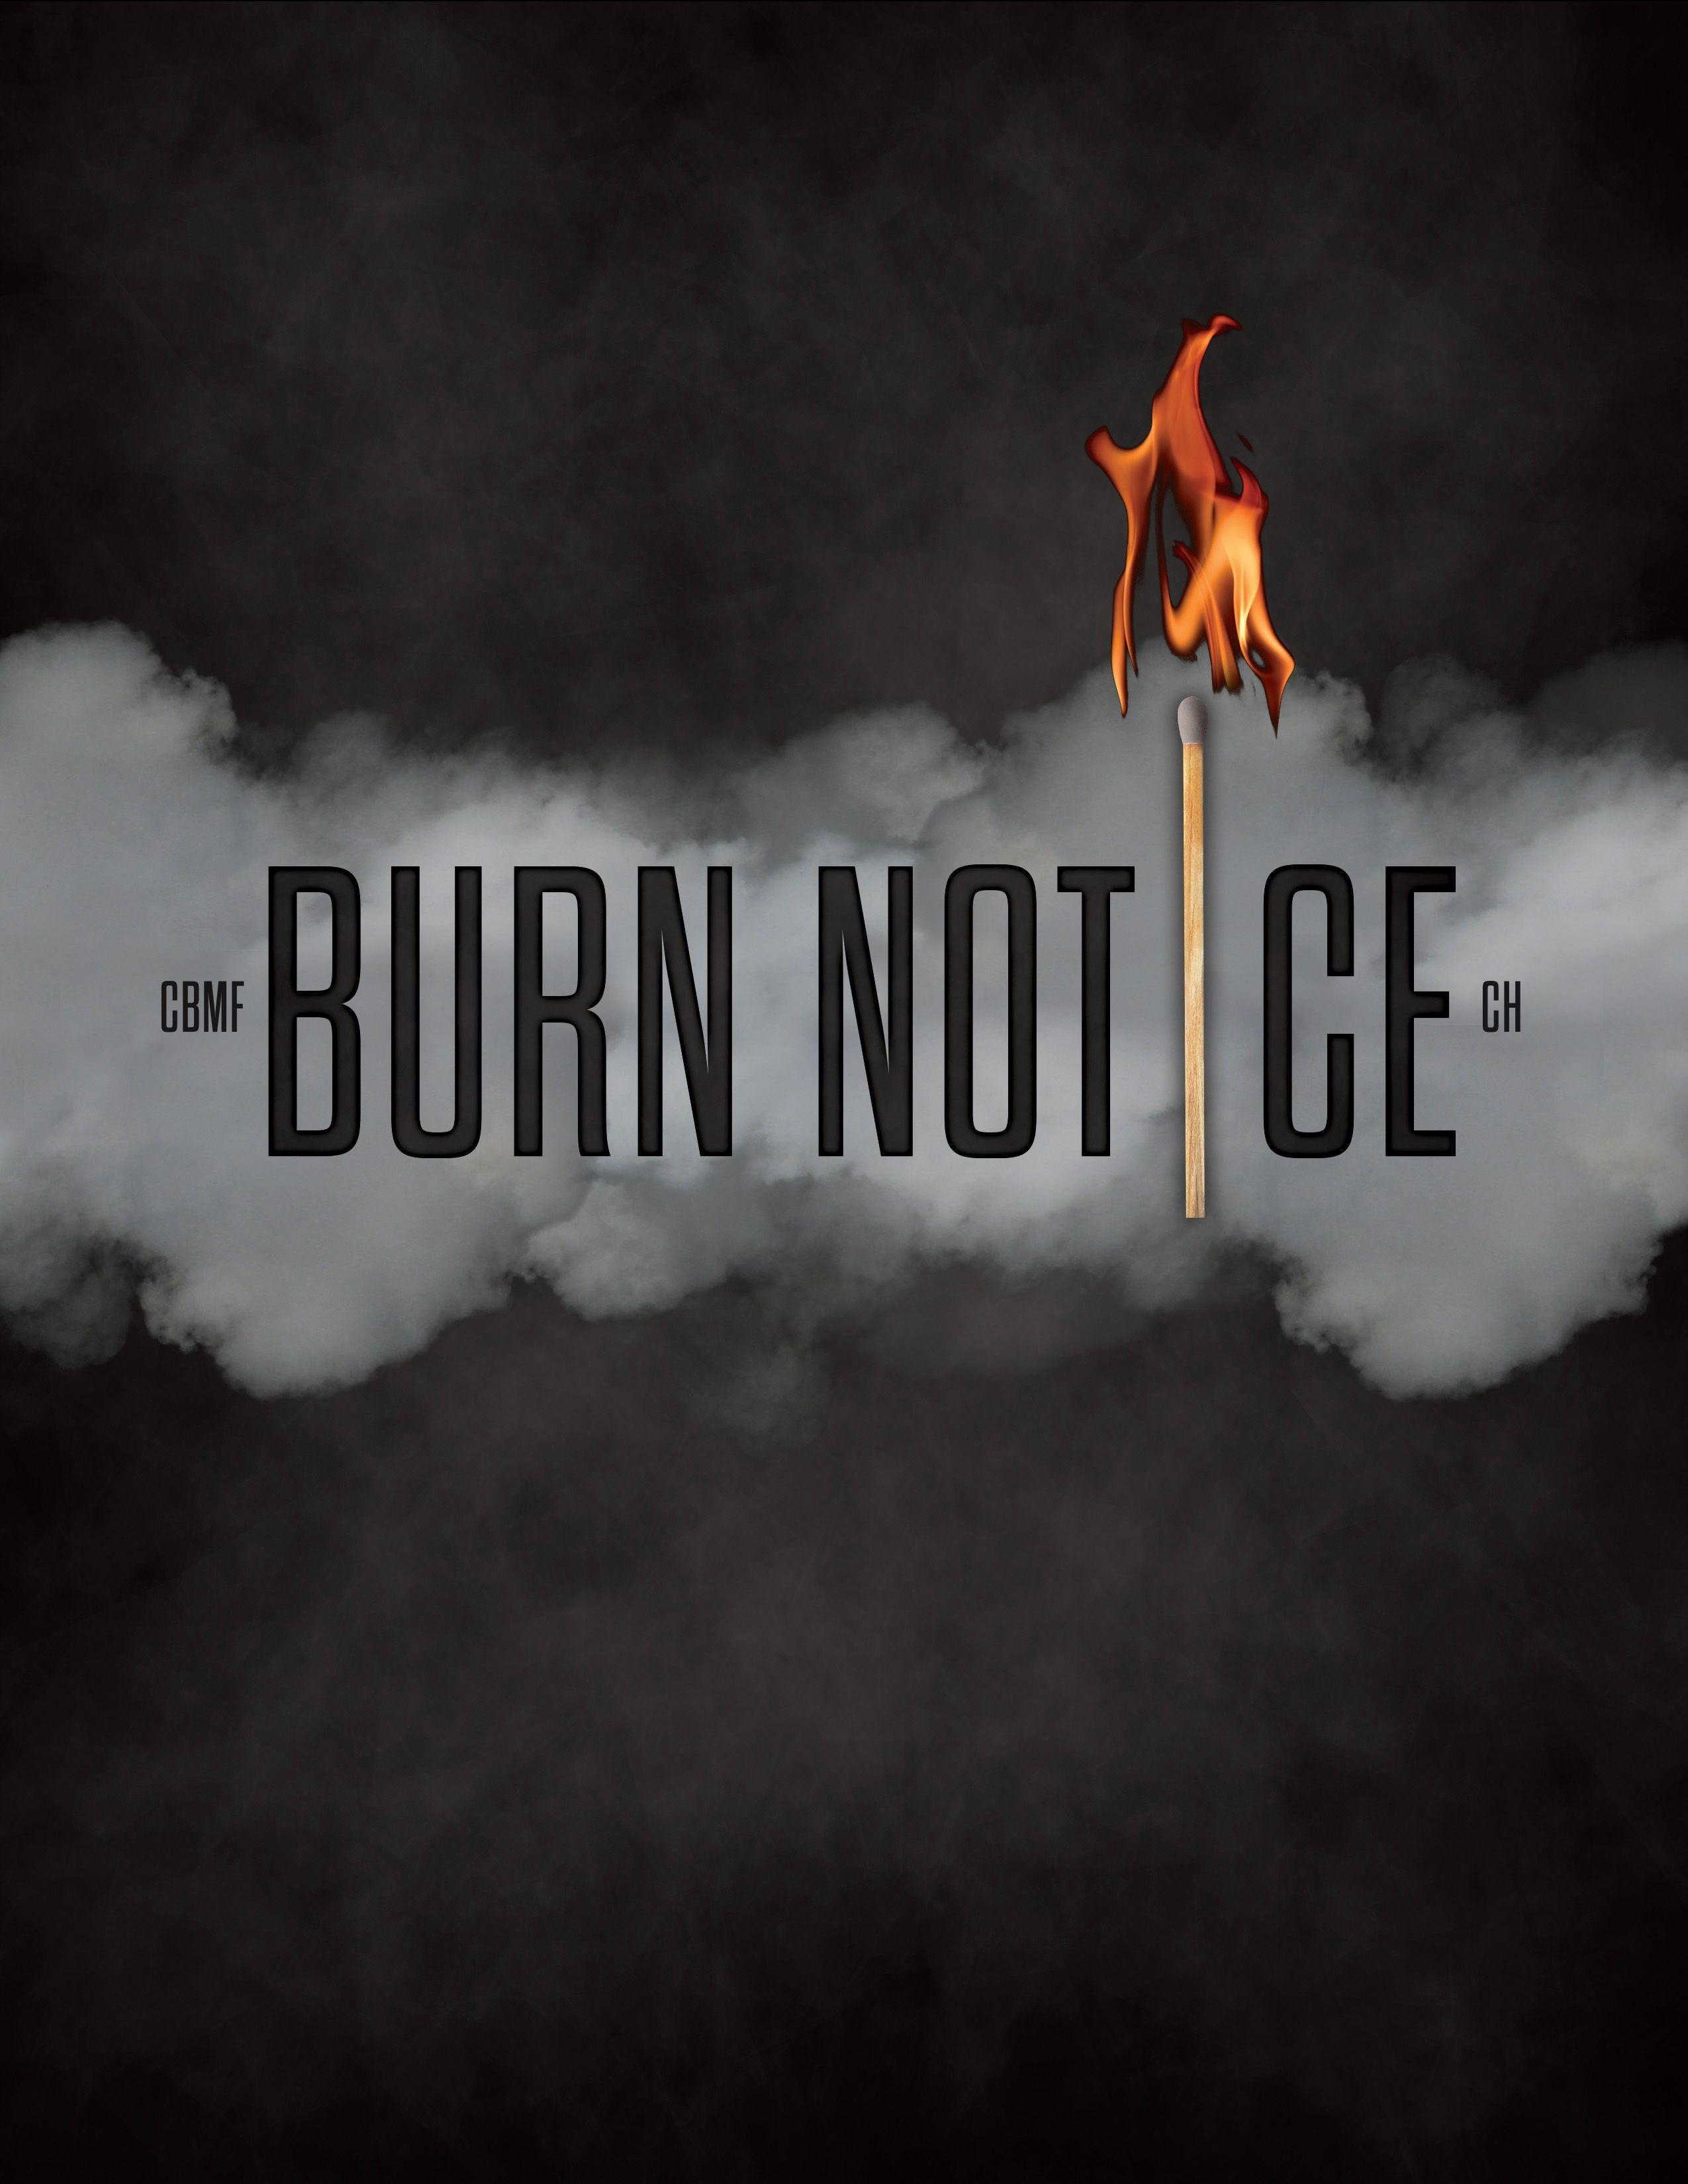 Burn Notice Logo - Burn Notice | Crystal Farms Equestrian Center - Marshall, MI